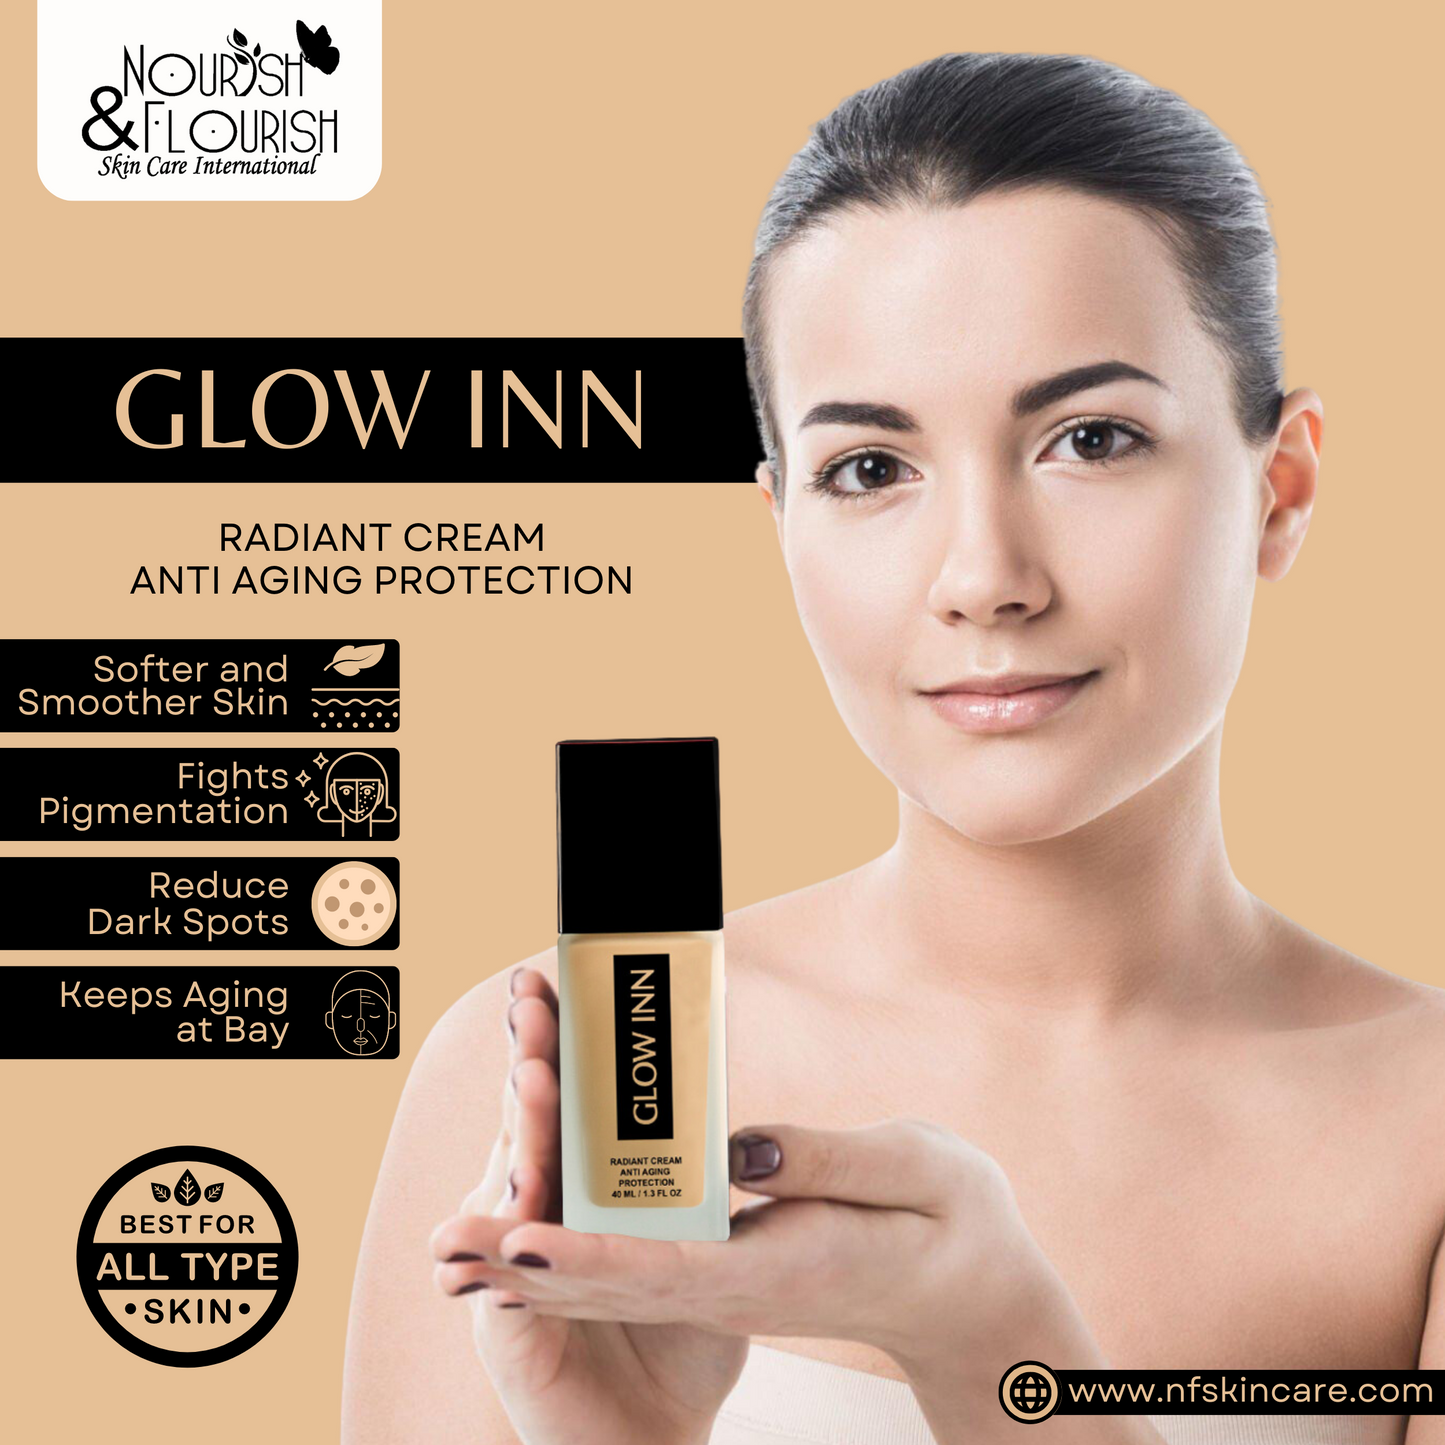 GLOW INN Premium Whitening Cream - Glowing Radiant Cream